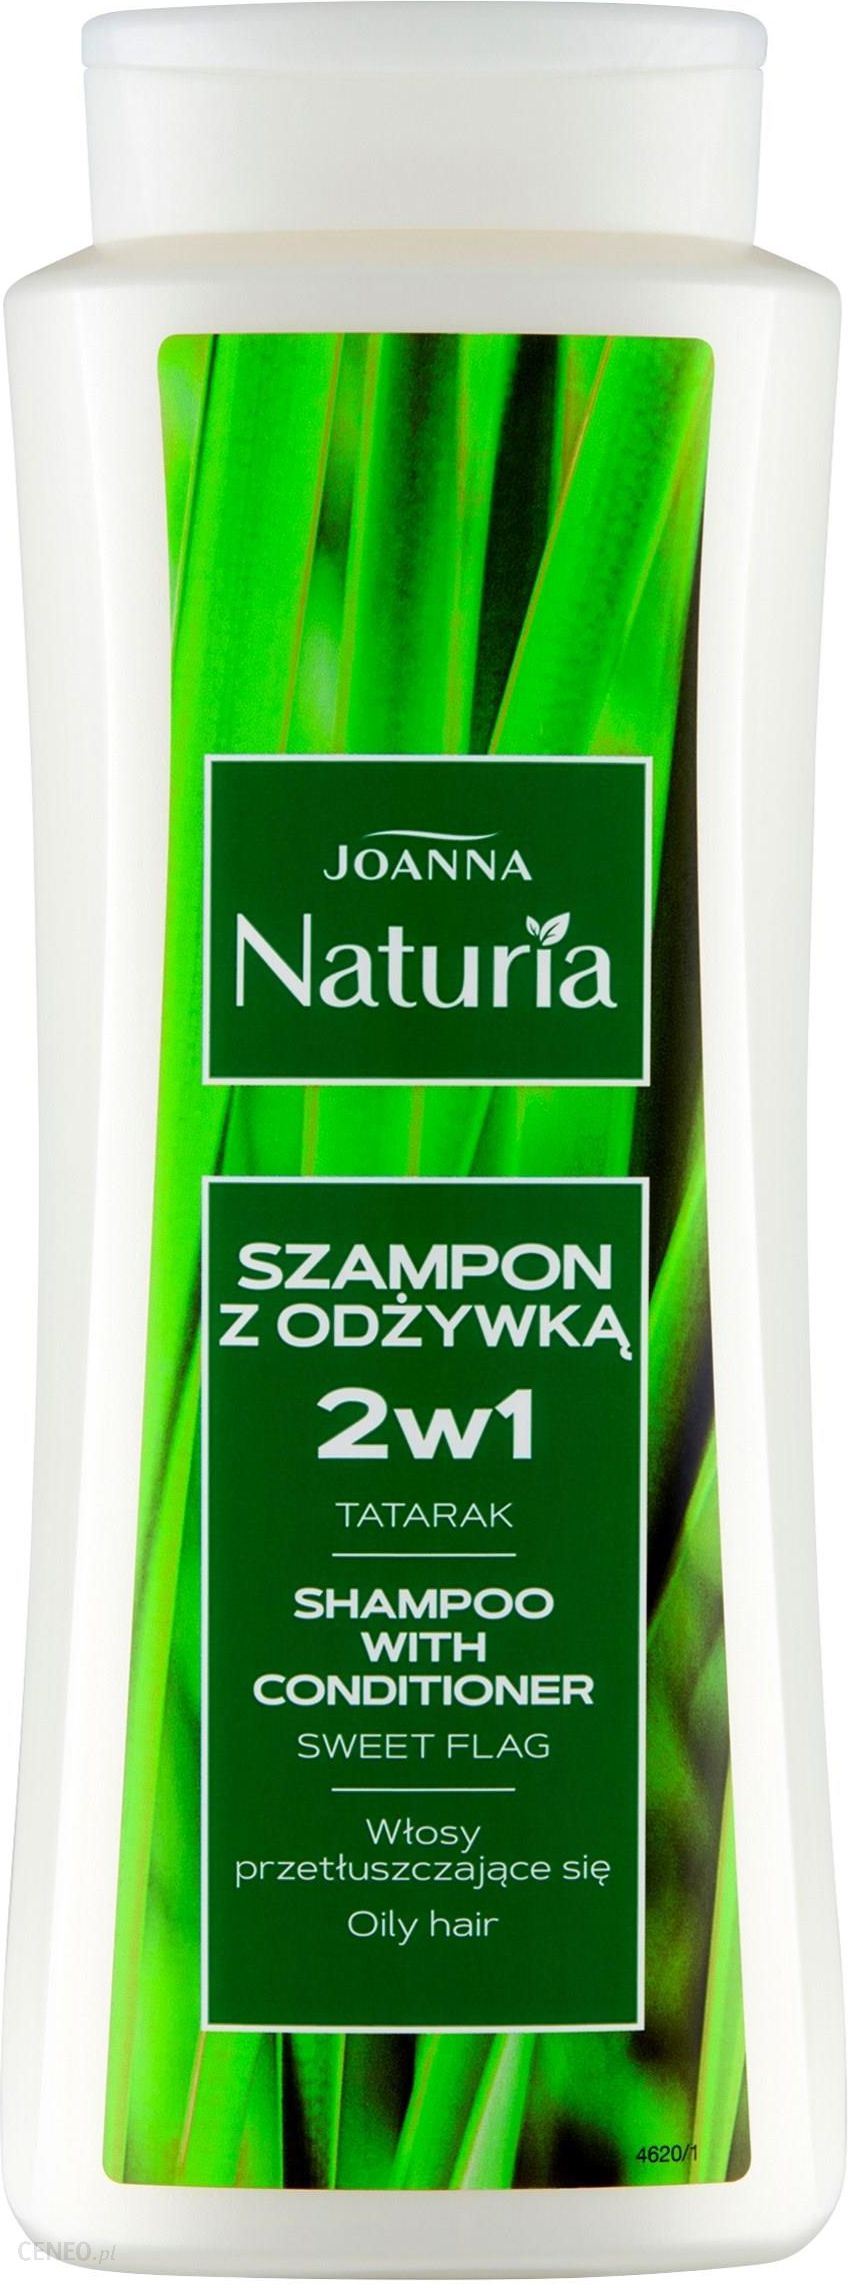 joanna szampon 2 w 1